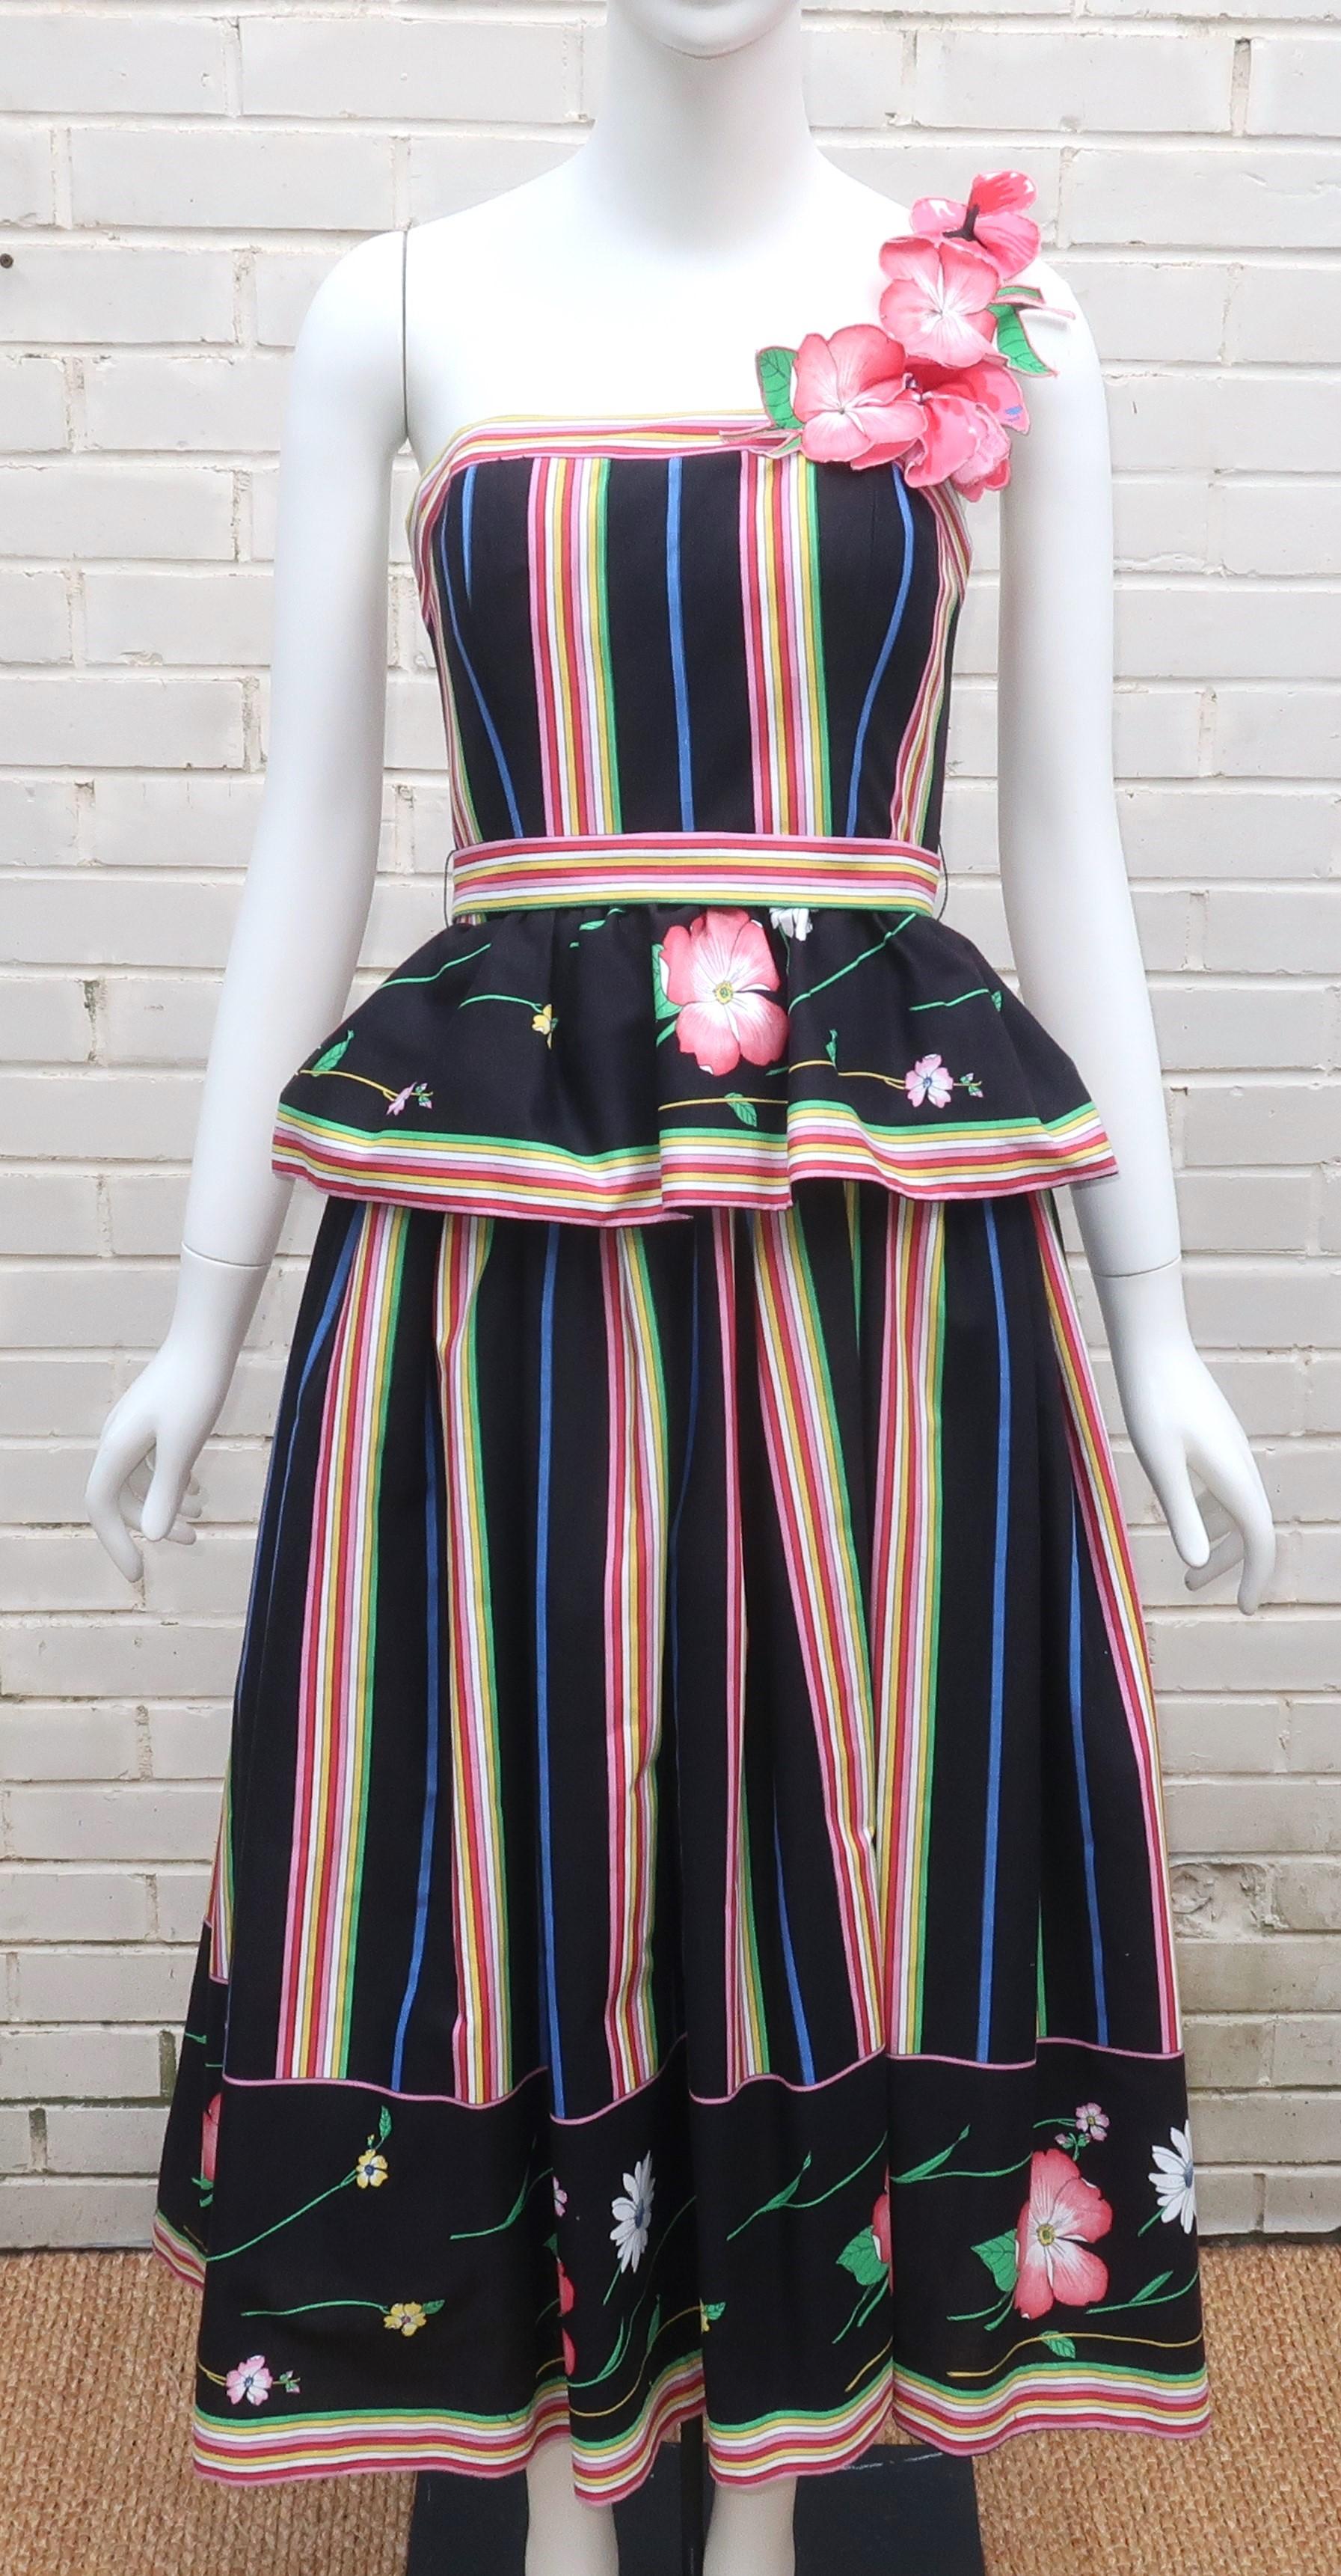 Glänzendes Baumwoll-Sonnenkleid aus den 1970er Jahren mit Blumen- und Streifenmuster in einer Mischung aus fröhlichen Farben wie Rosa, Rot, Gelb, Grün und Blau auf schwarzem Grund.  Der Ein-Schulter-Schnitt hat ein Schößchen in der Taille und einen